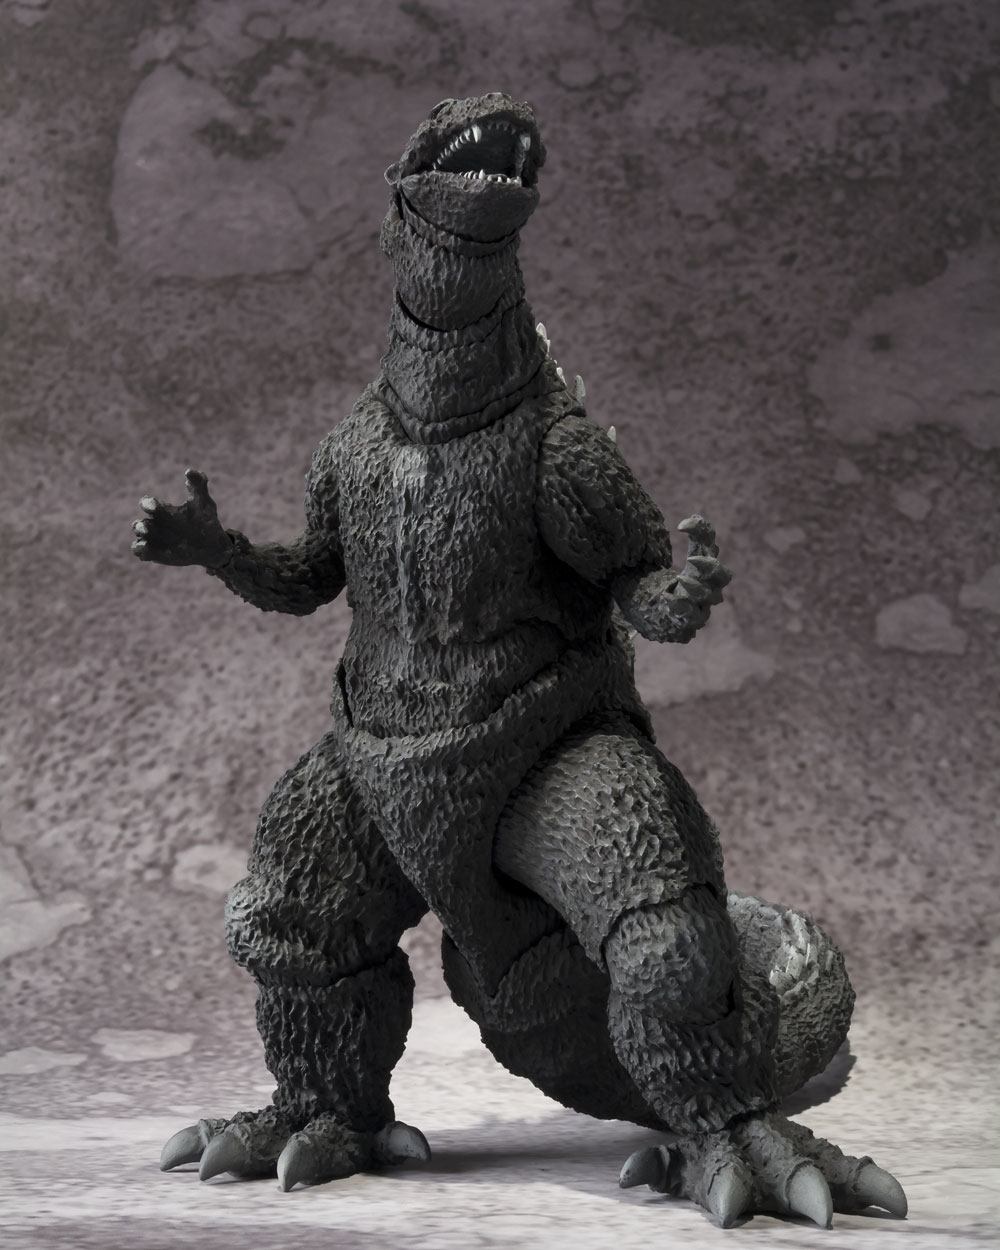 Godzilla S.H. MonsterArts Action Figure Godzilla 1954 15cm - Action Figures - Bandai Tamashii Nations - Hobby Figures UK